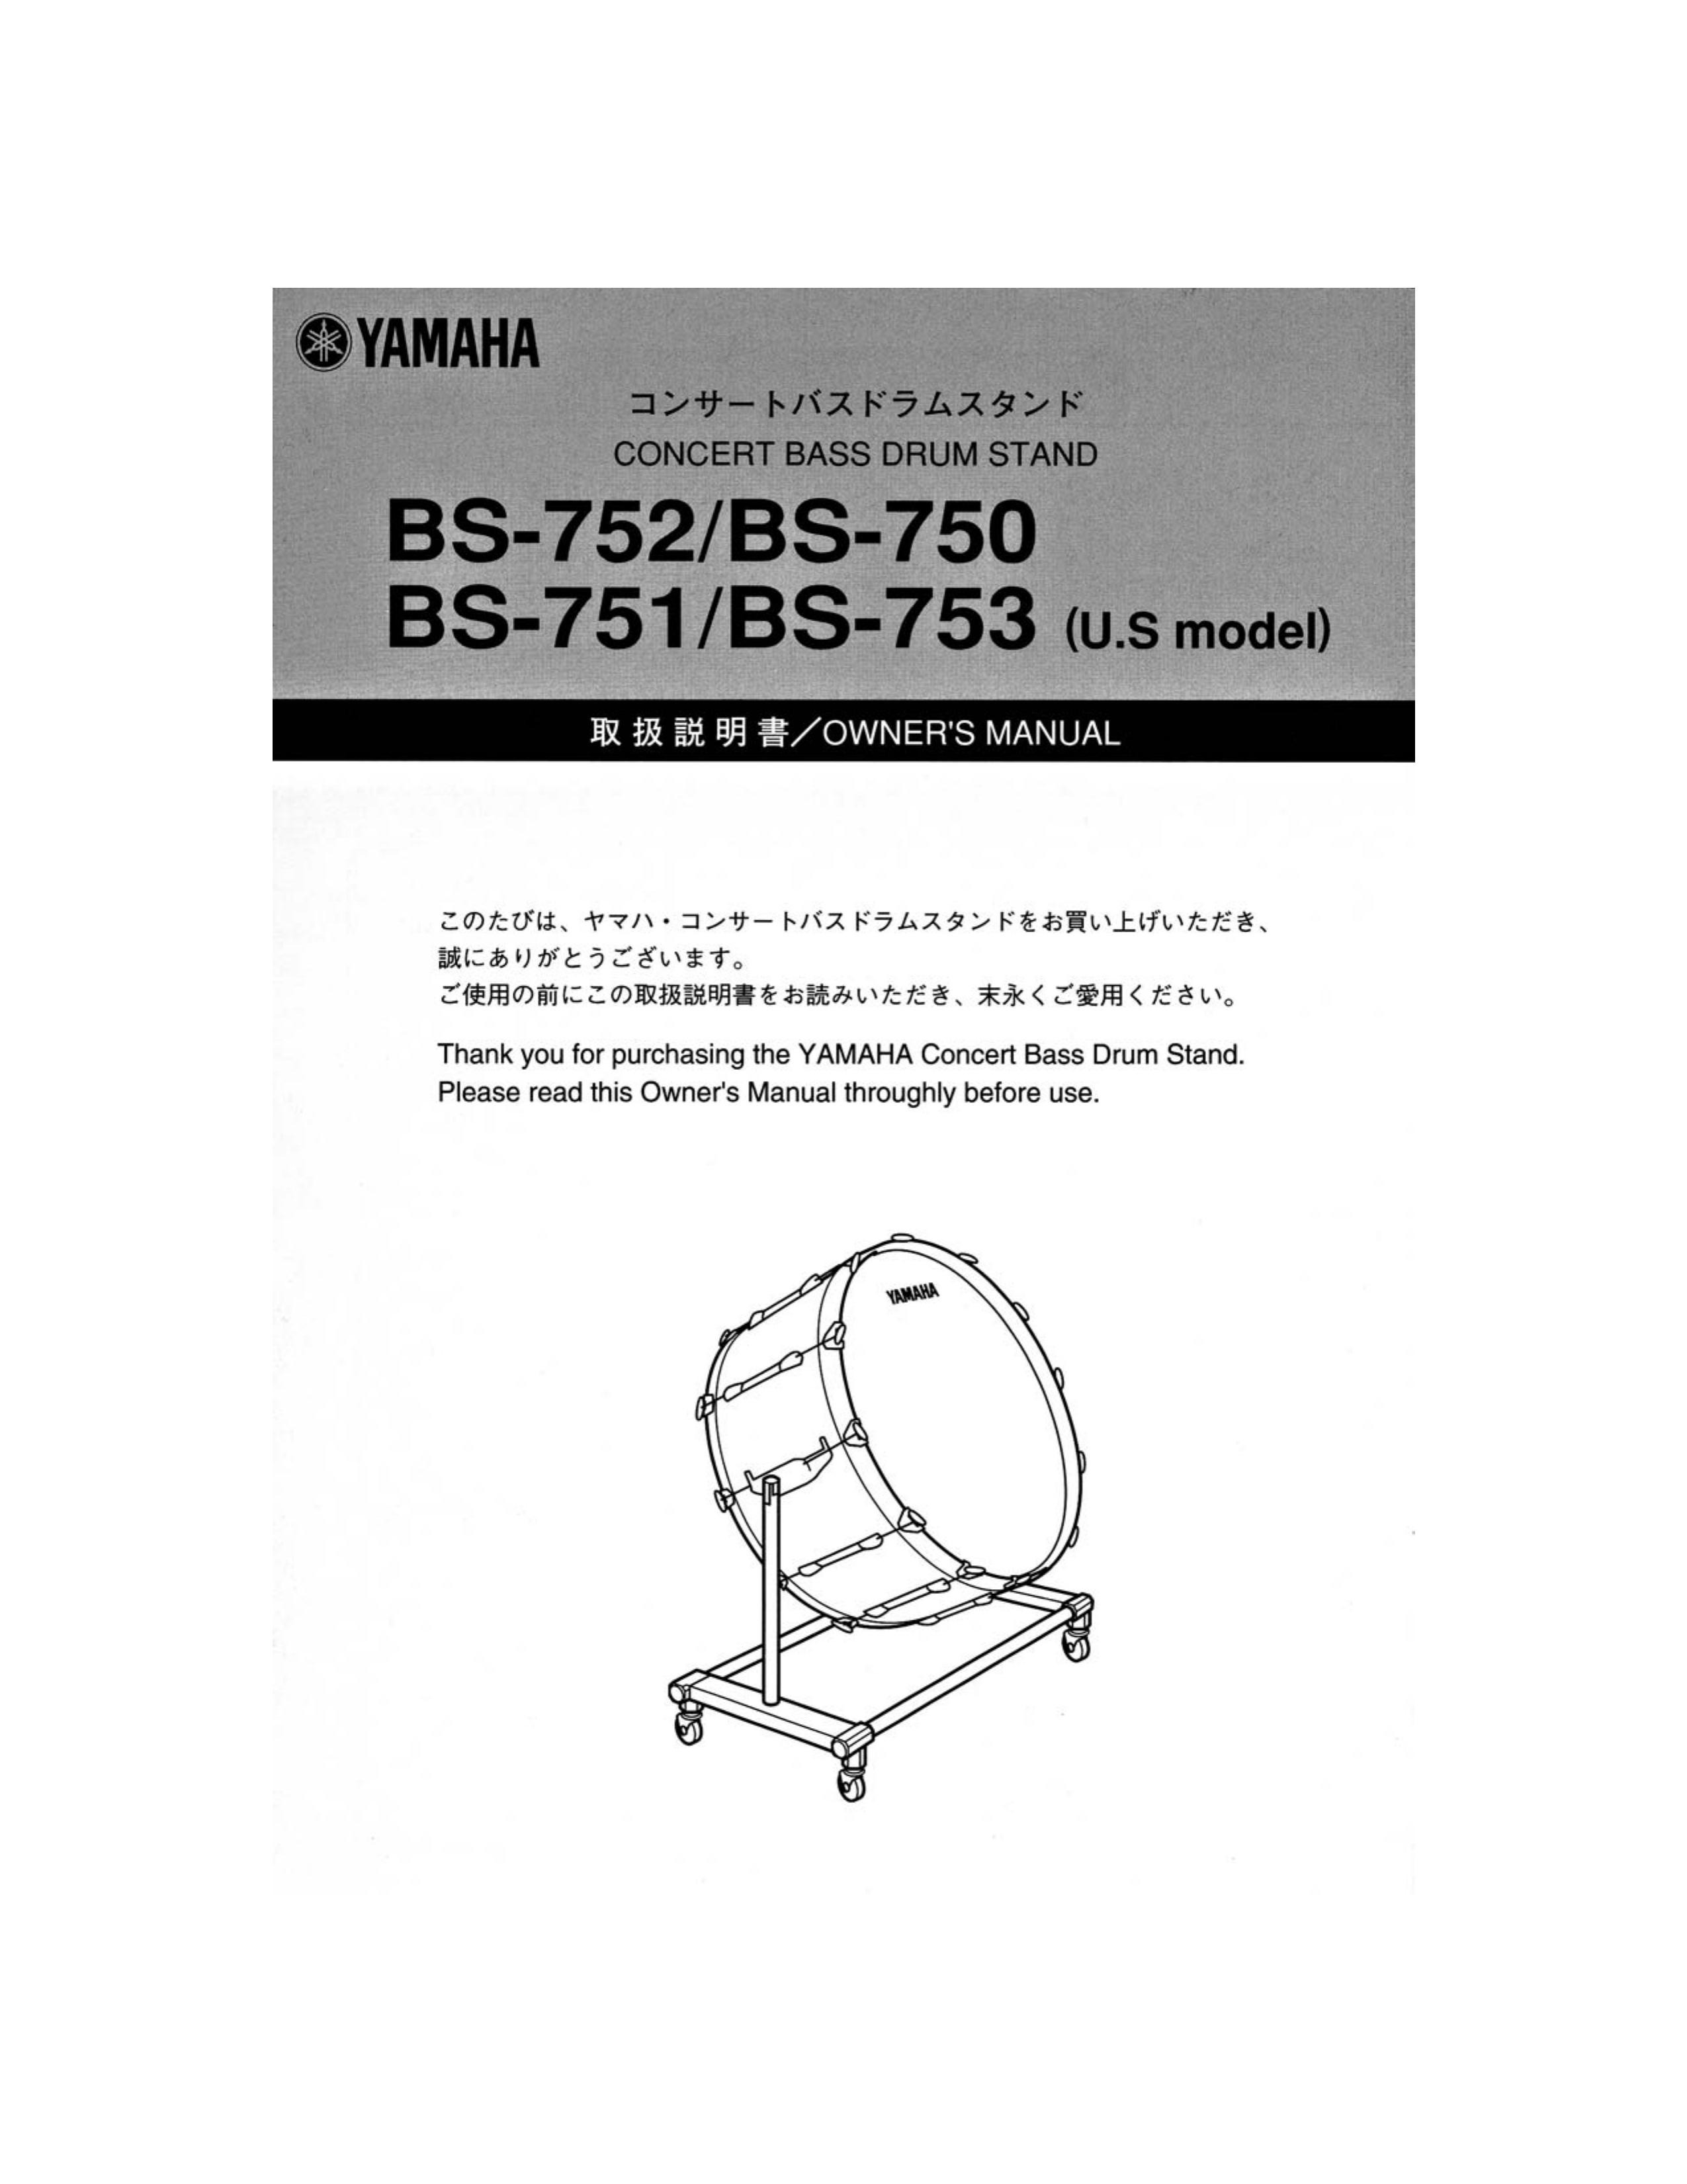 Yamaha Concert Bass Drum Stand Drums User Manual